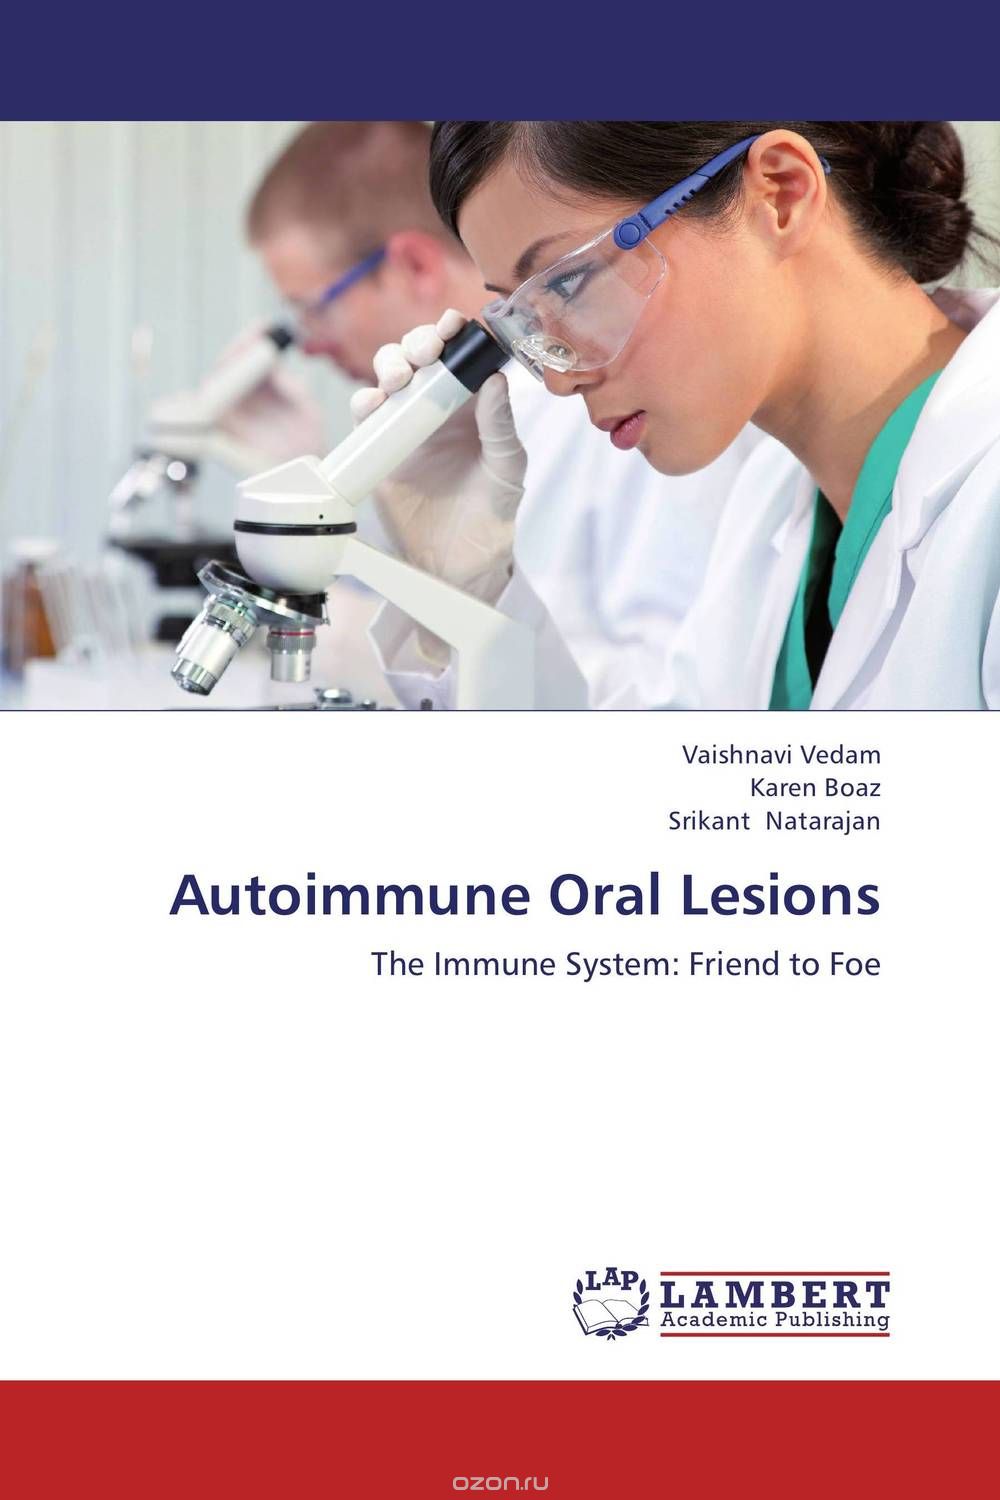 Скачать книгу "Autoimmune Oral Lesions"